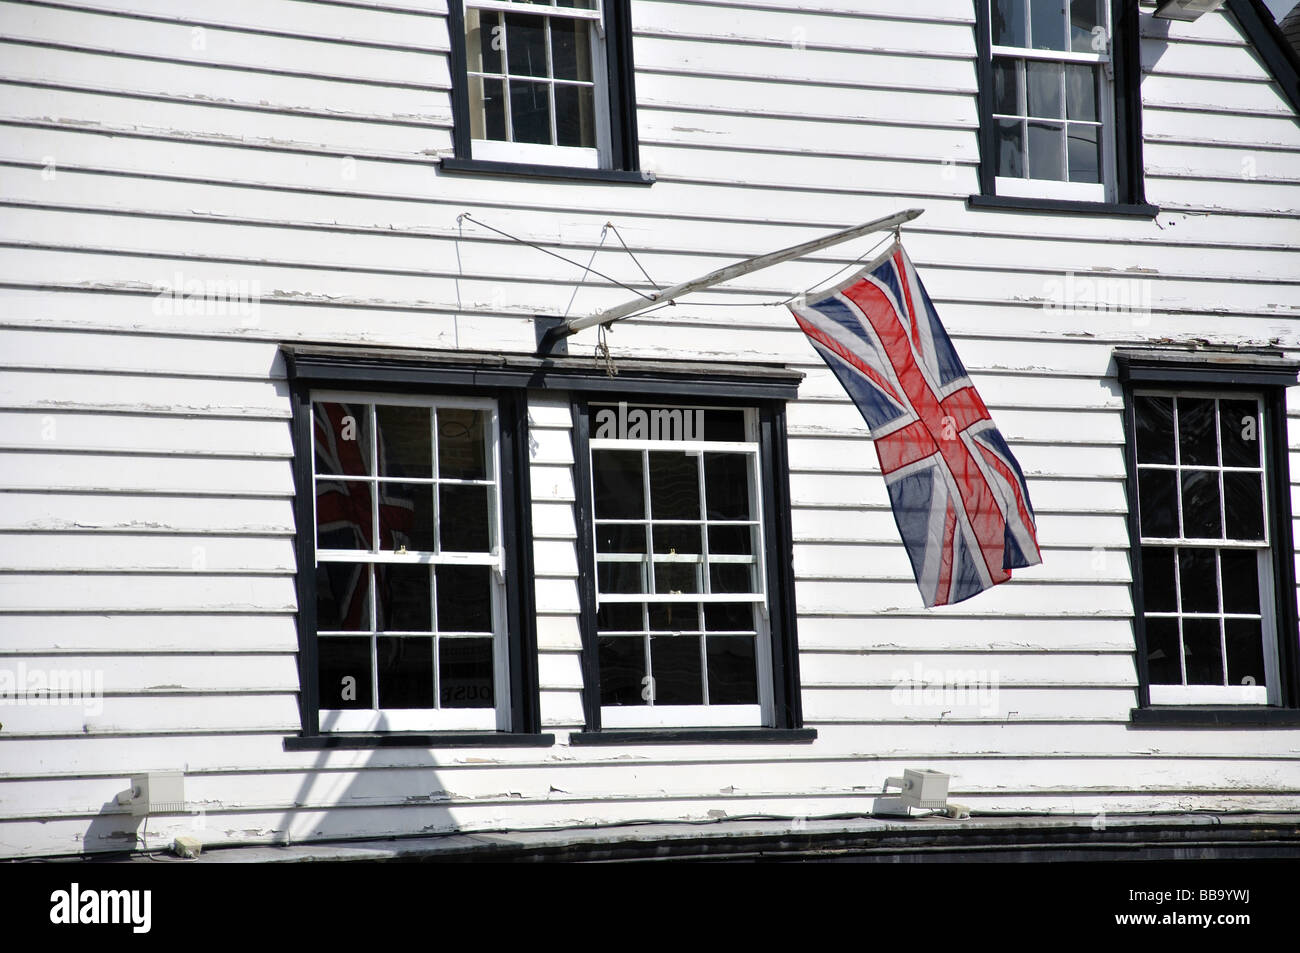 Union Jack flag sur bâtiment en bois, le quart du patrimoine, Gravesend, Kent, Angleterre, Royaume-Uni Banque D'Images